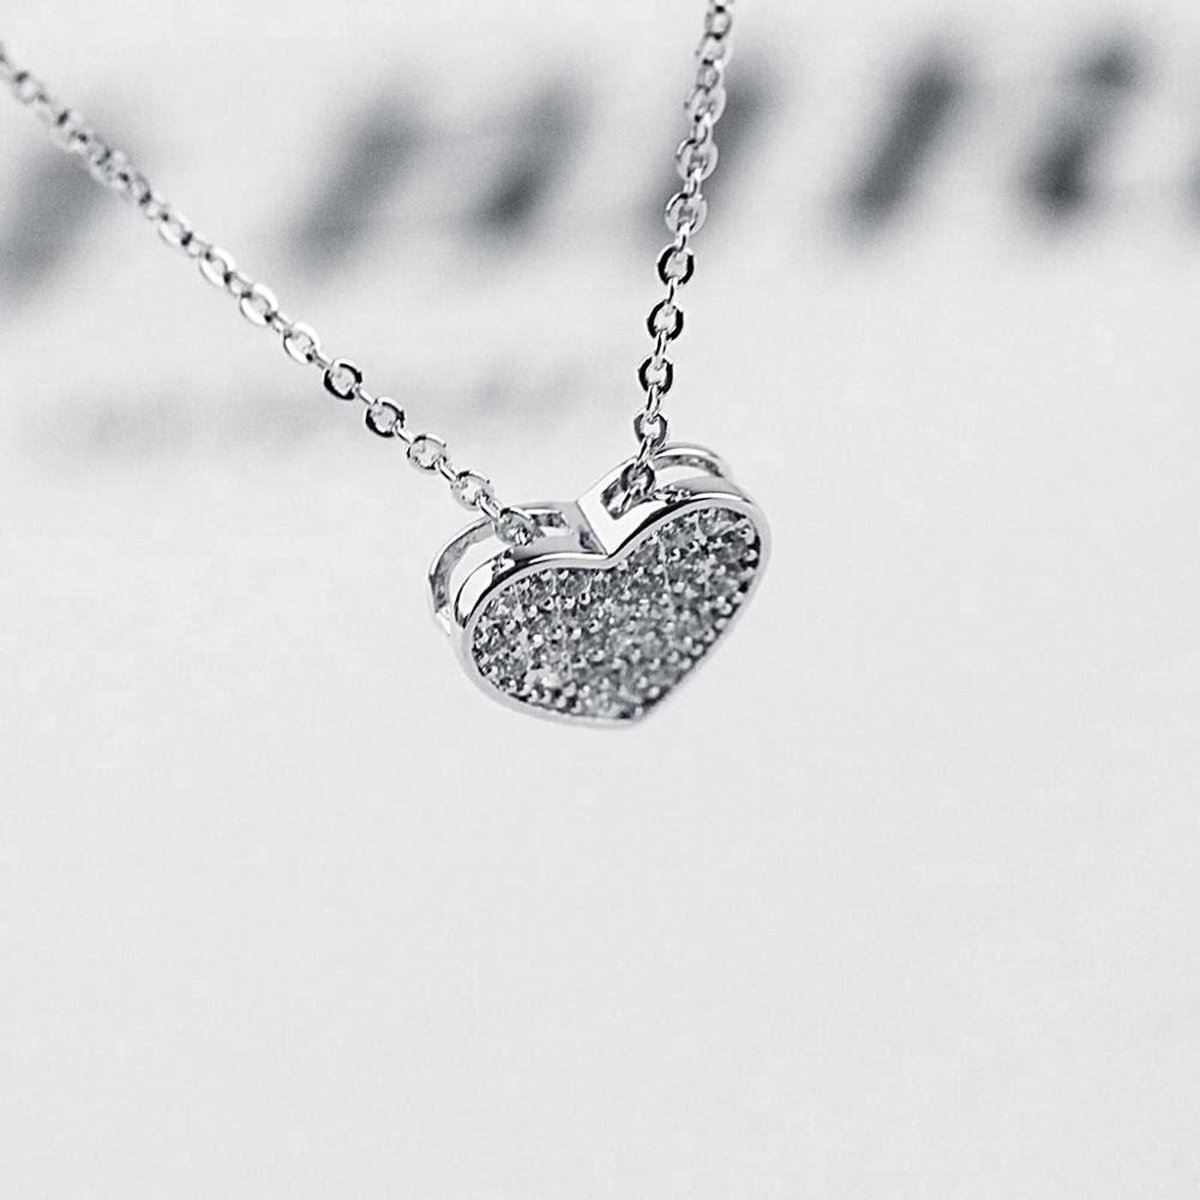 Fate Jewellery Ketting FJ436 - Heart - 45cm + 5cm - Zilverkleurig verguld met ingelegde zirkonia kristallen